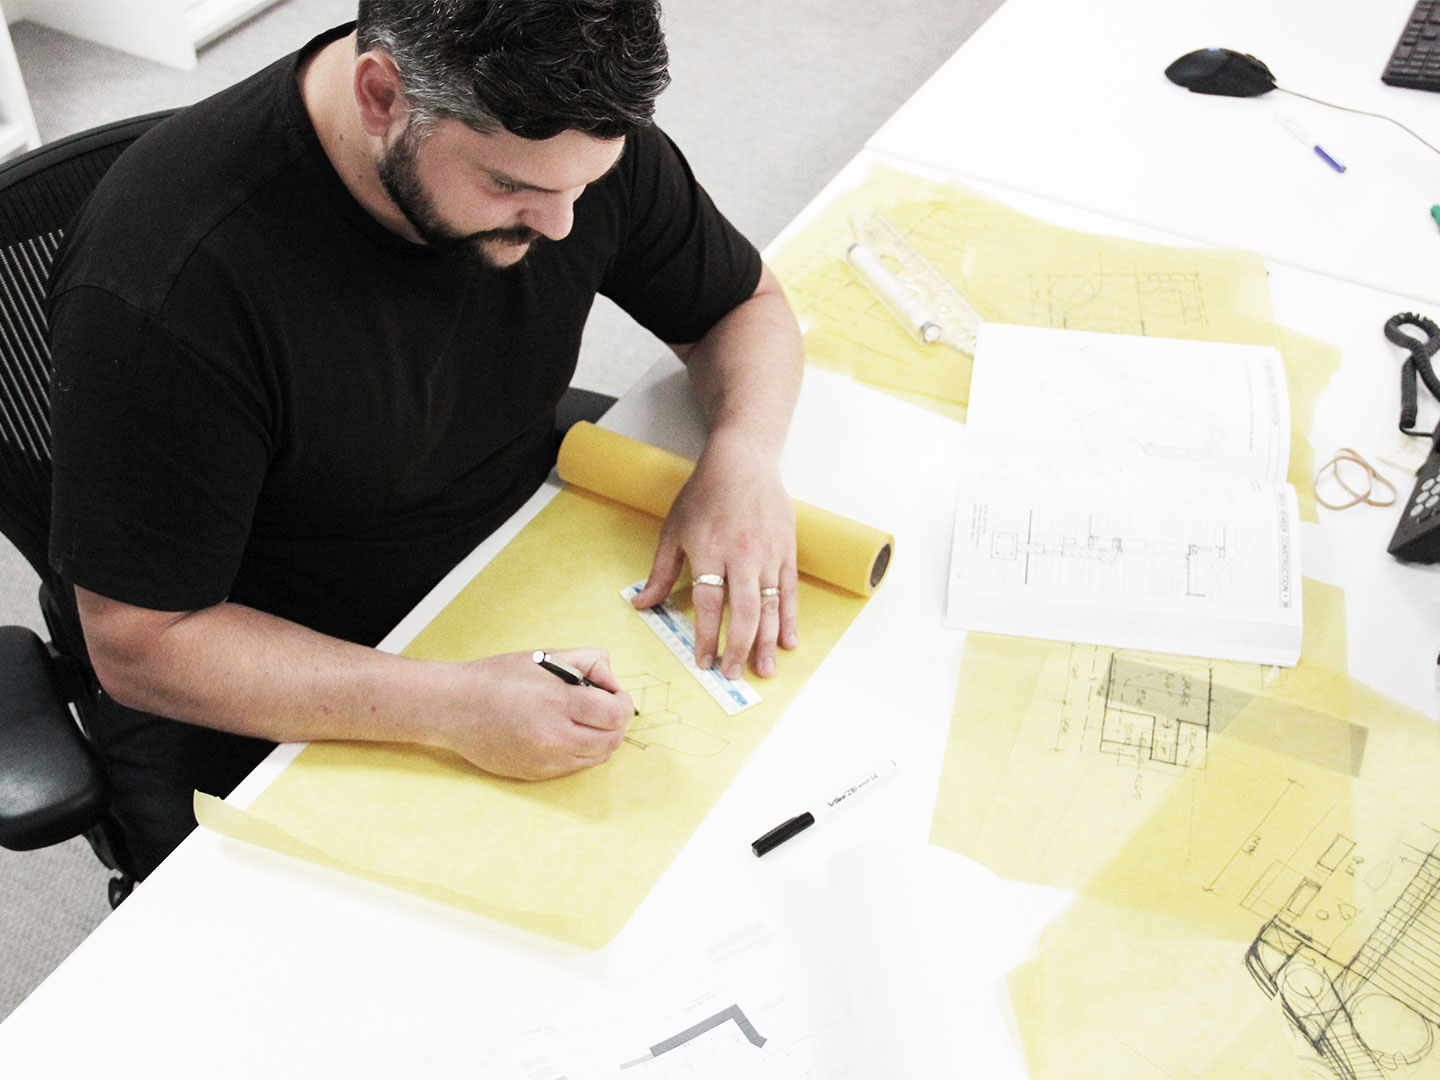 Luca Vezzosi pictured in the Mim Design studio, Melbourne